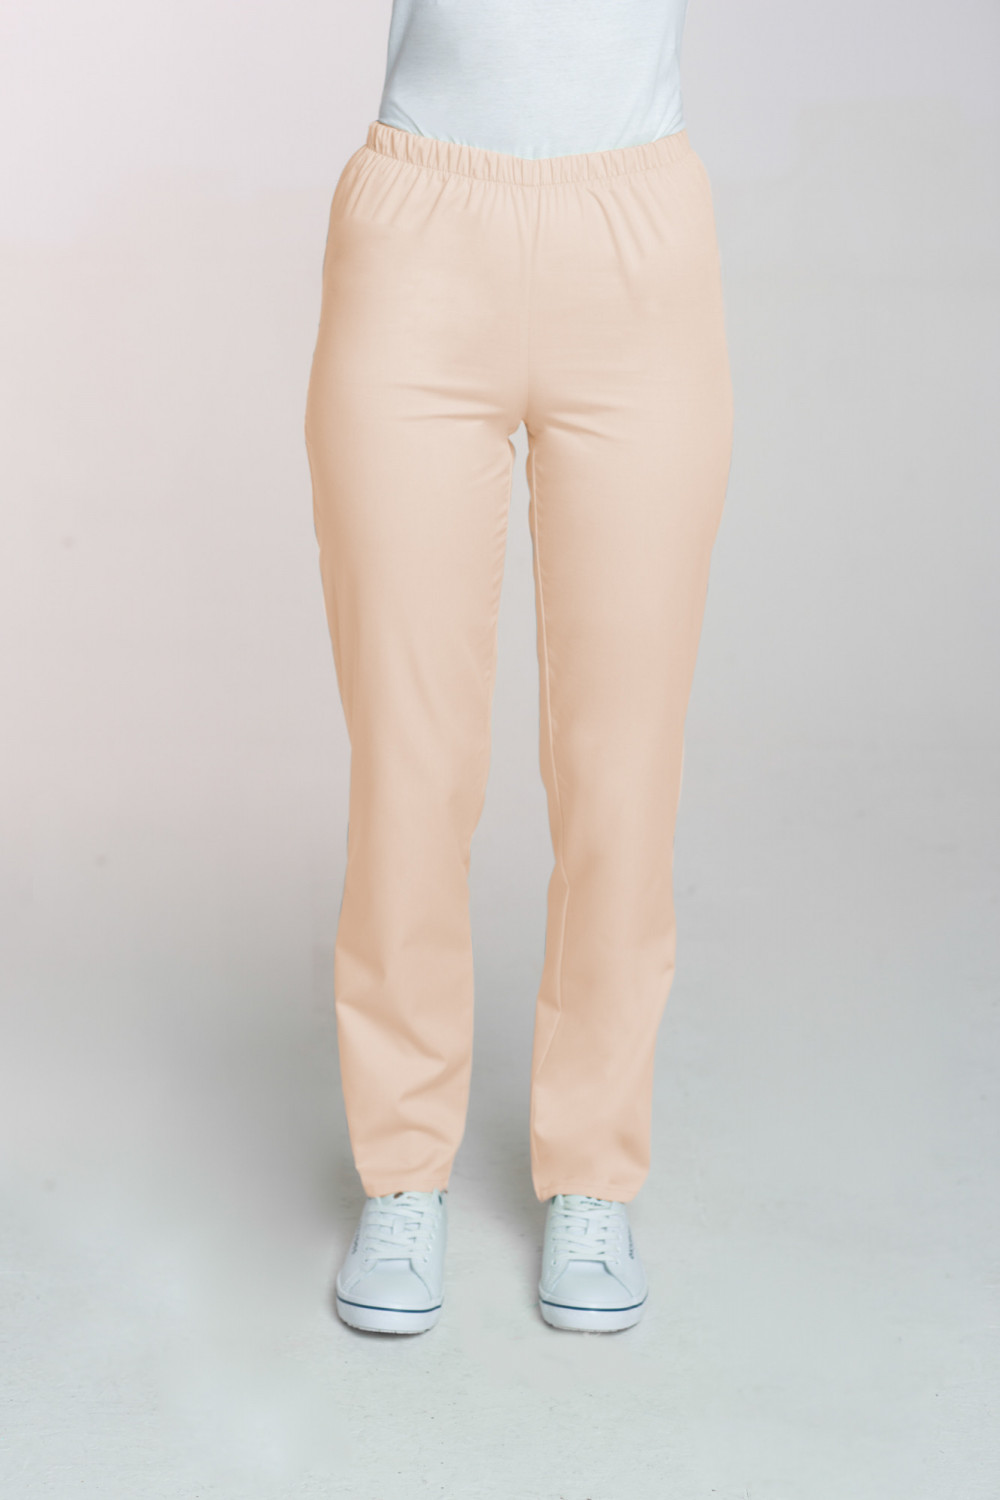 M-086 Spodnie damskie medyczne spodnie do pracy kolor beż